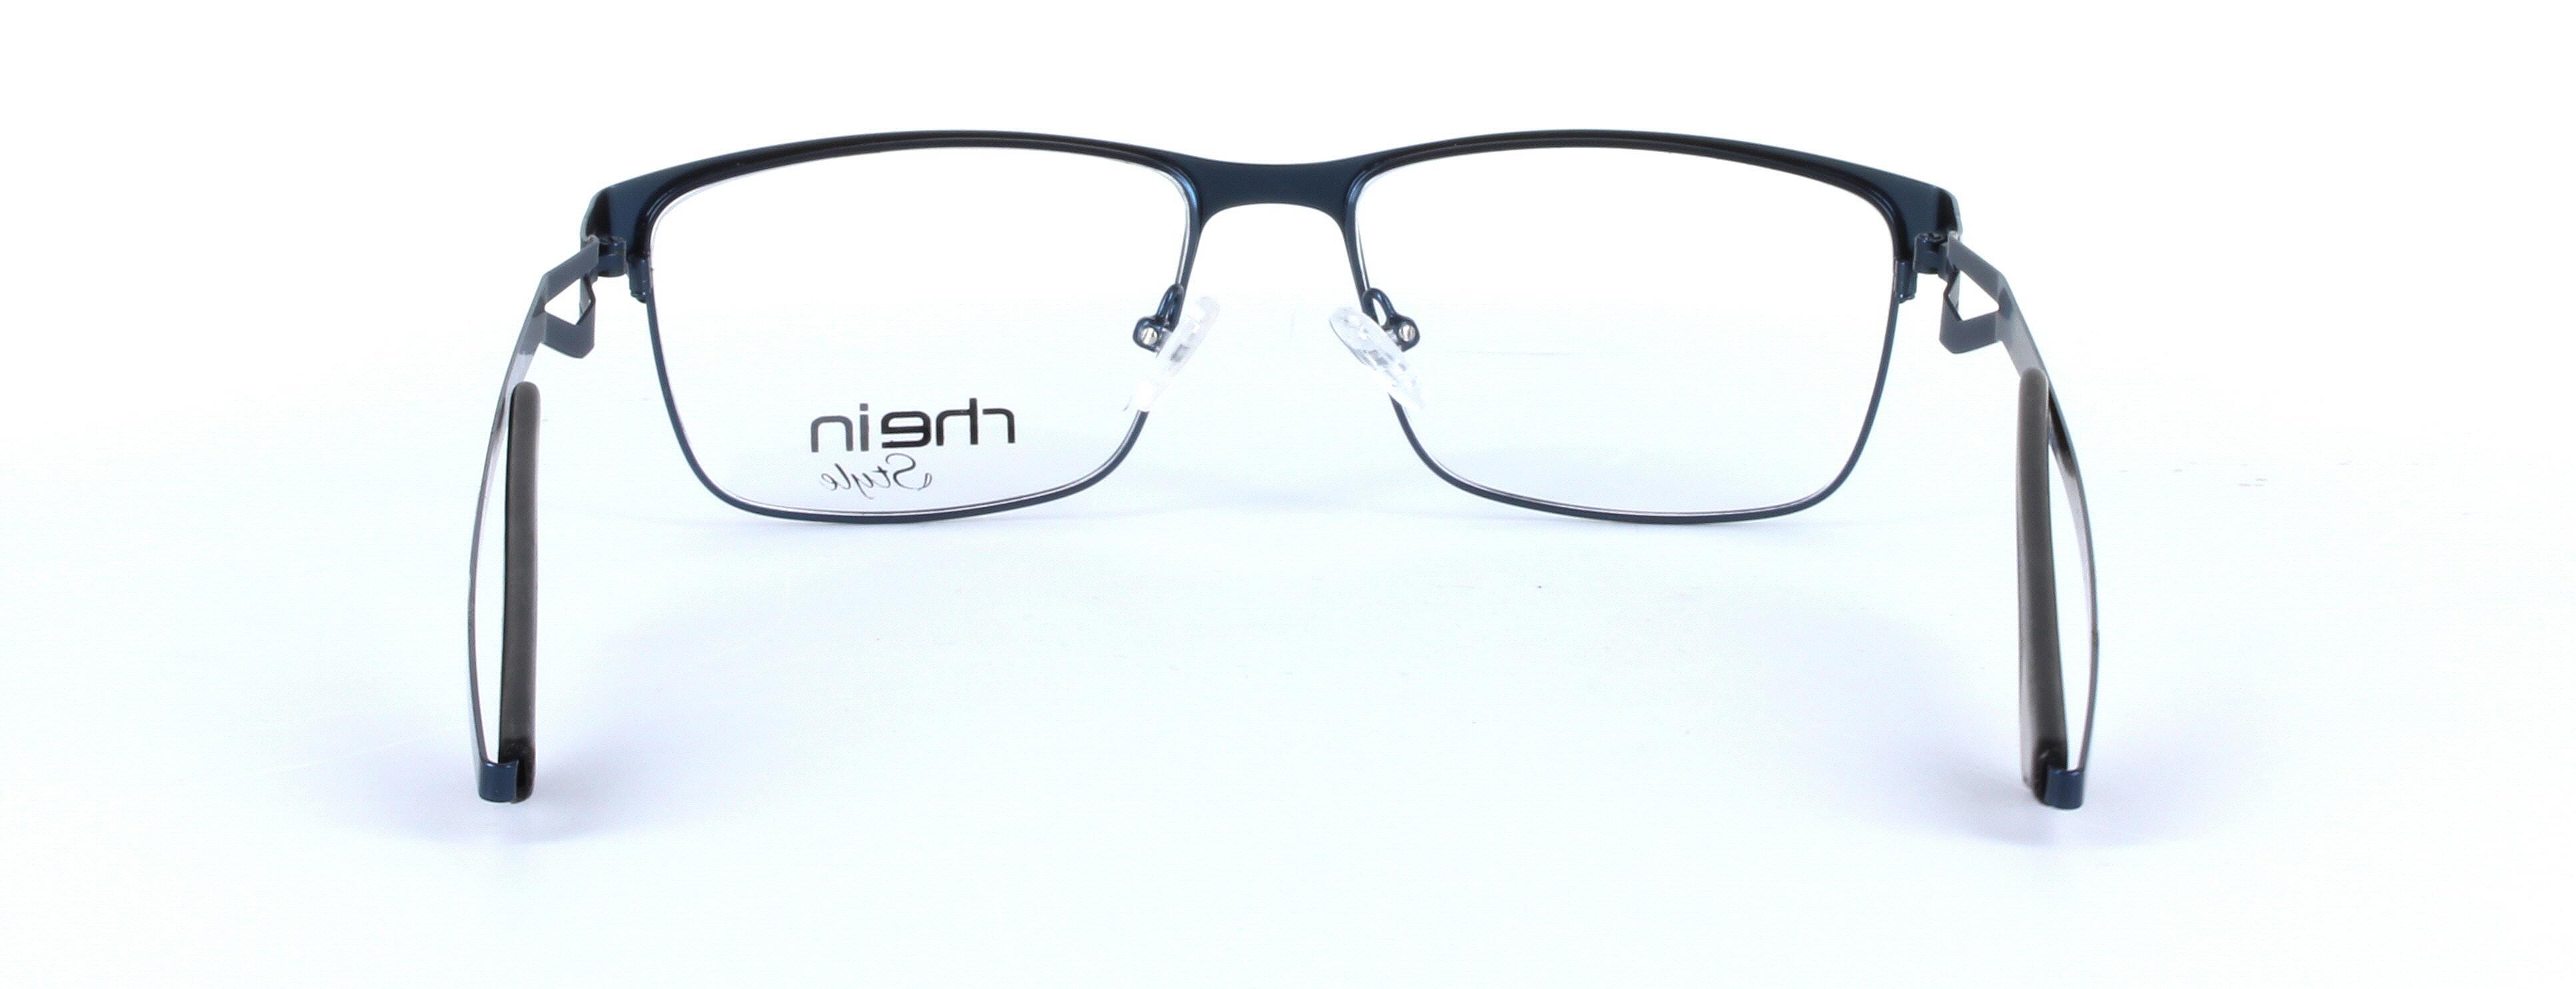 Carl Blue Full Rim Round Metal Glasses - Image View 3